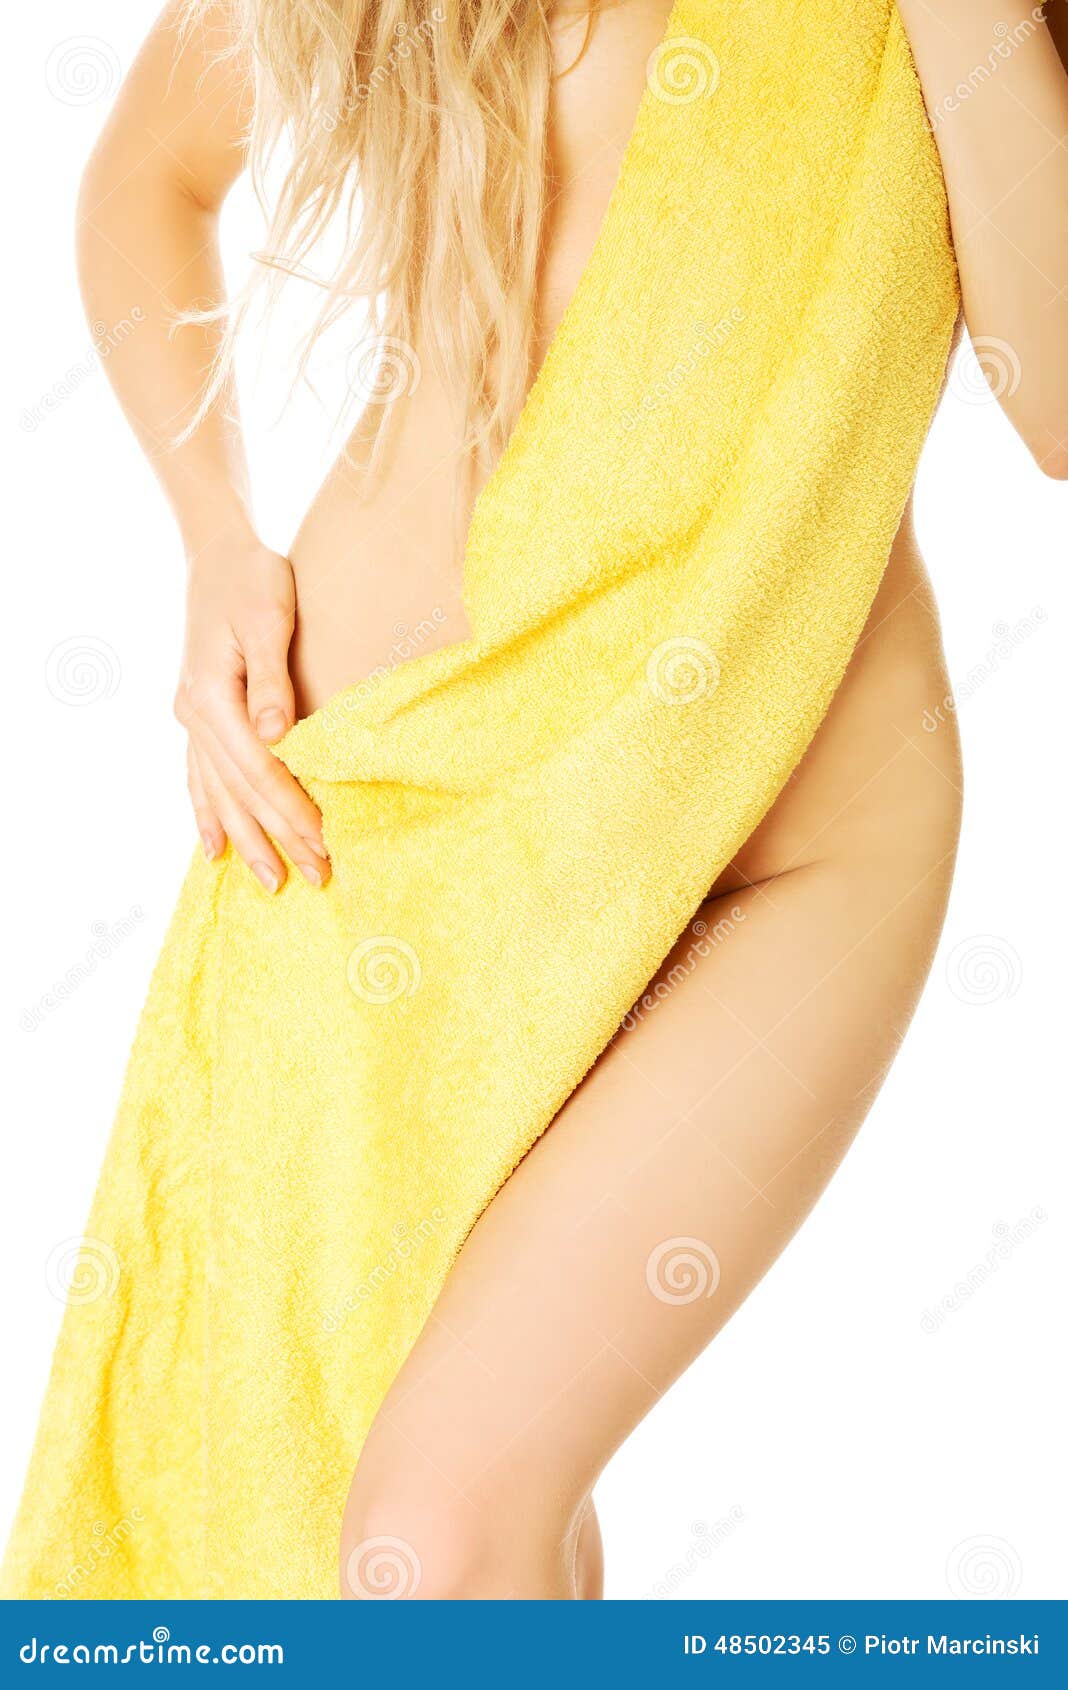 Девушка без полотенца. Девушка завернутая в полотенце. Женщина в одном полотенце. Женское тело в полотенце. Девушка замотанная в полотенце.